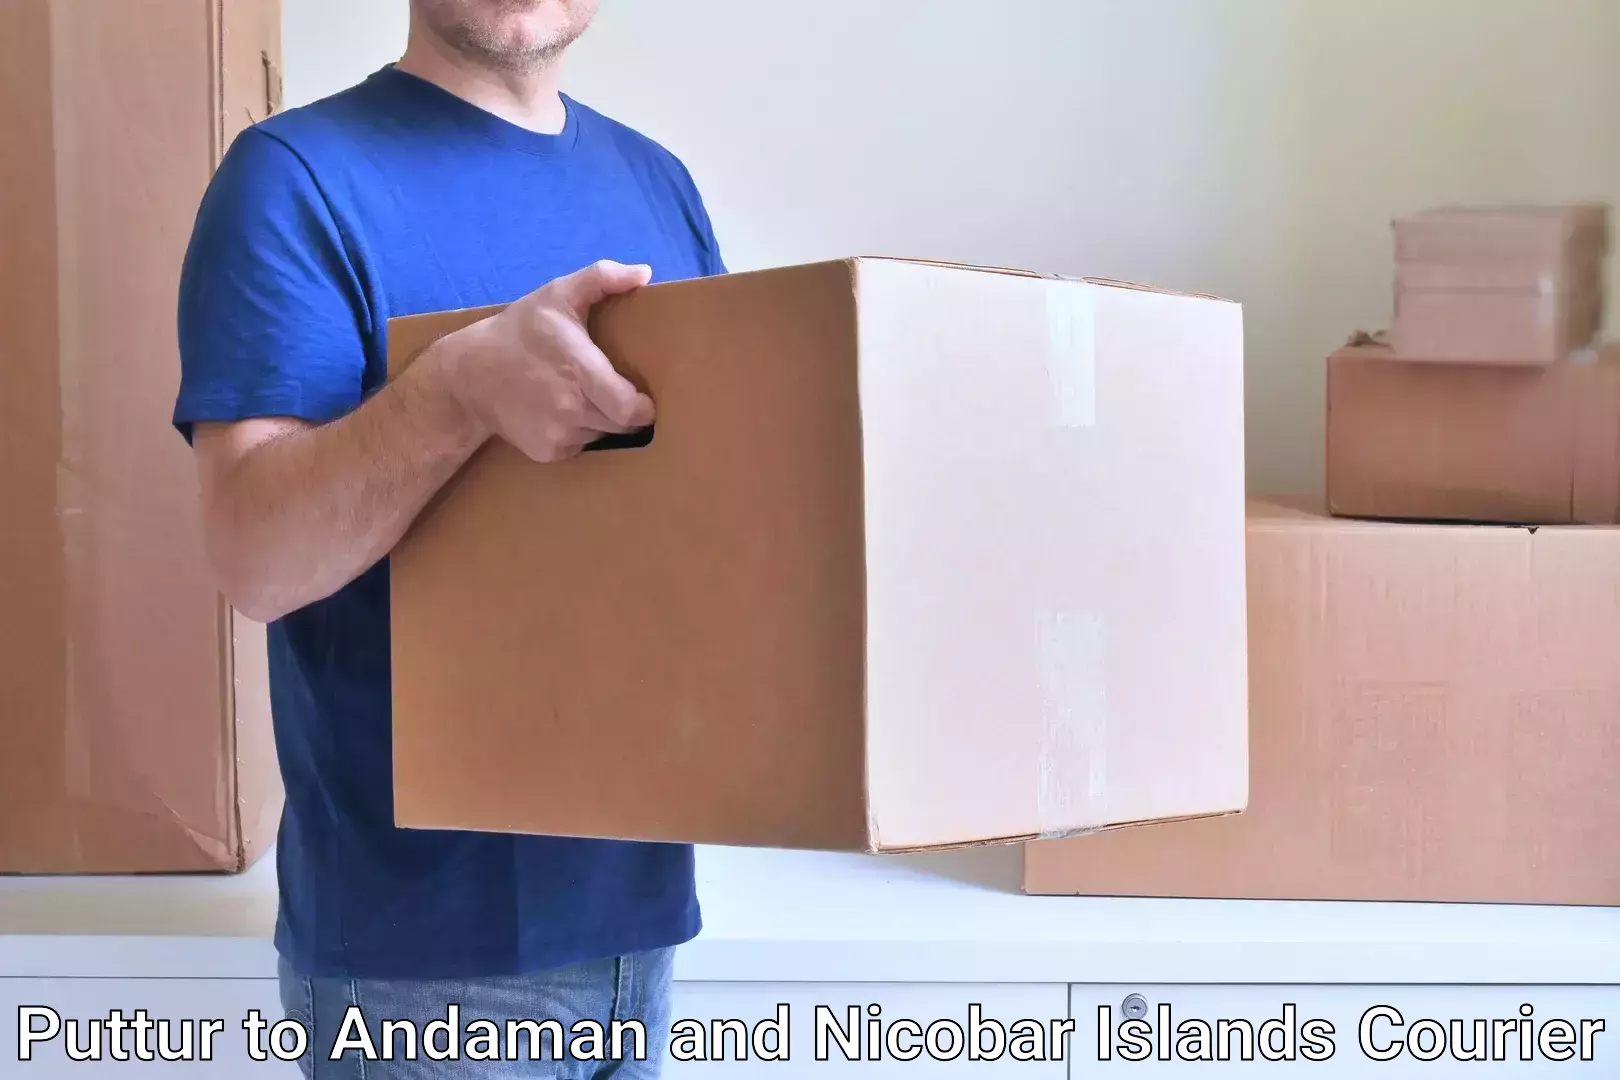 Efficient parcel service Puttur to South Andaman